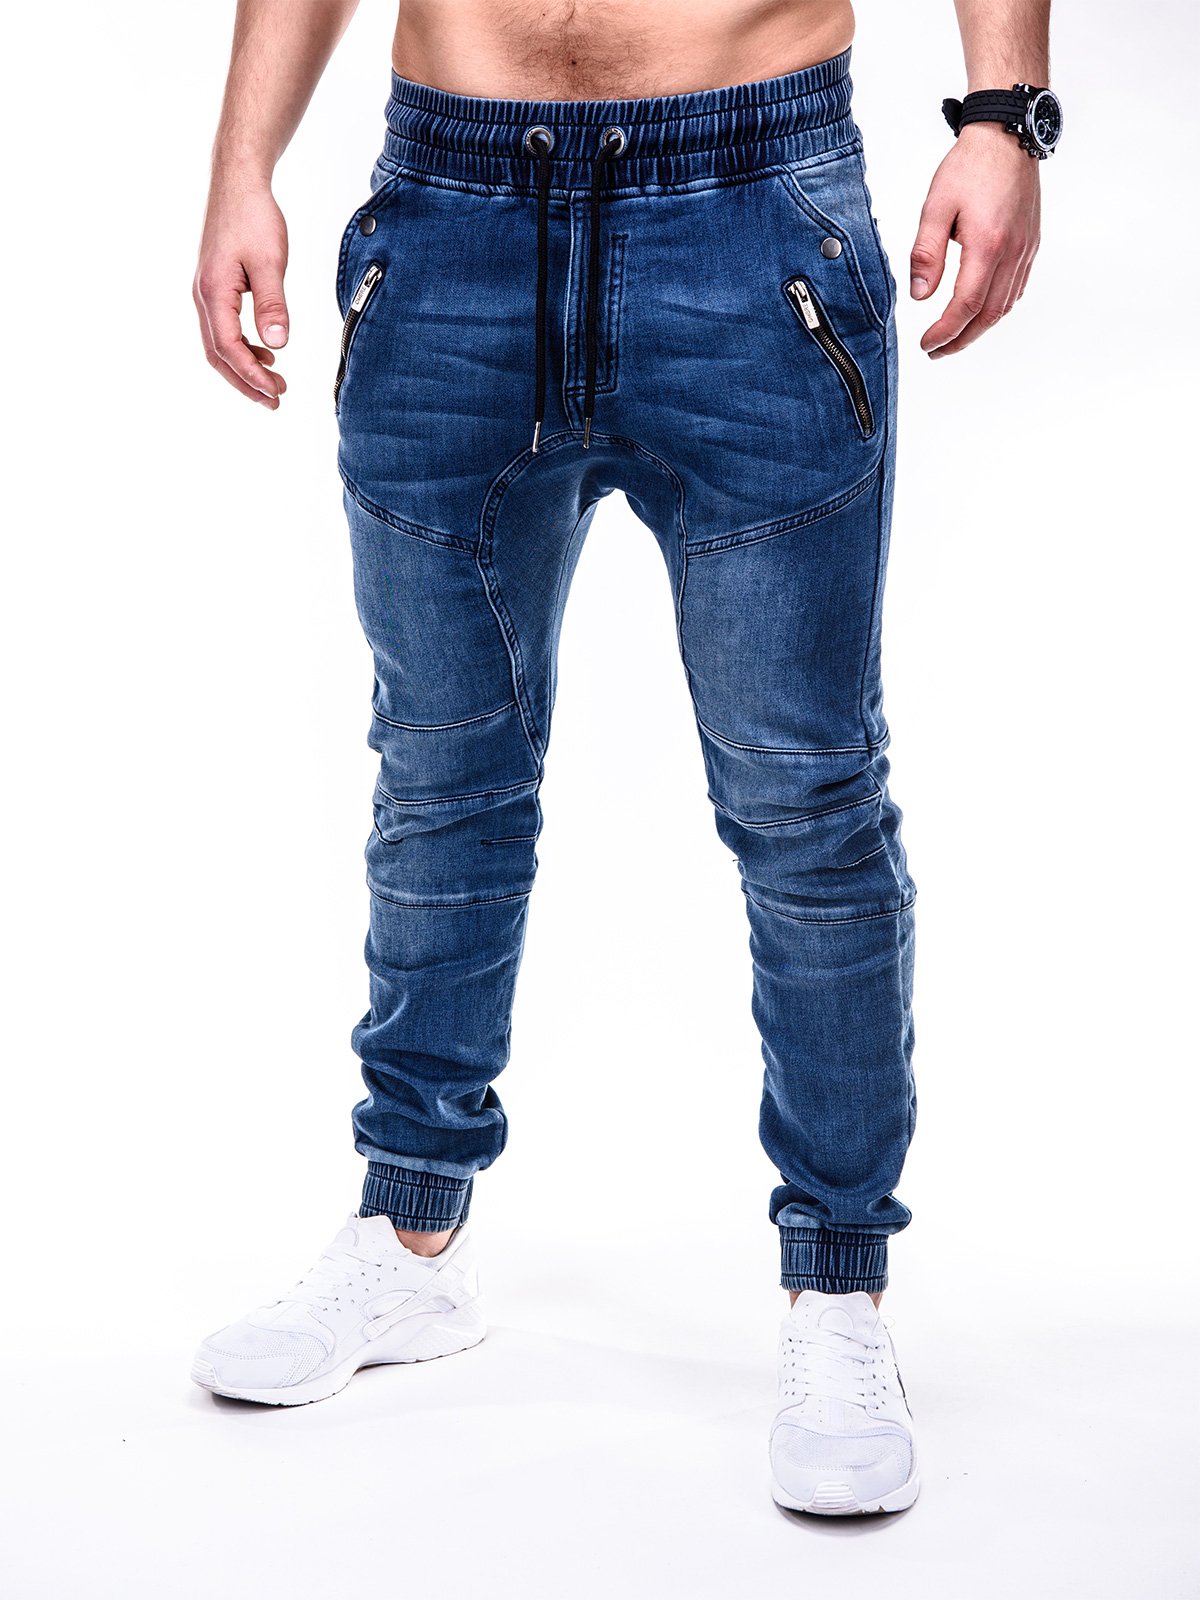 Men's jeans joggers P404 - blue | MODONE wholesale - Clothing For Men